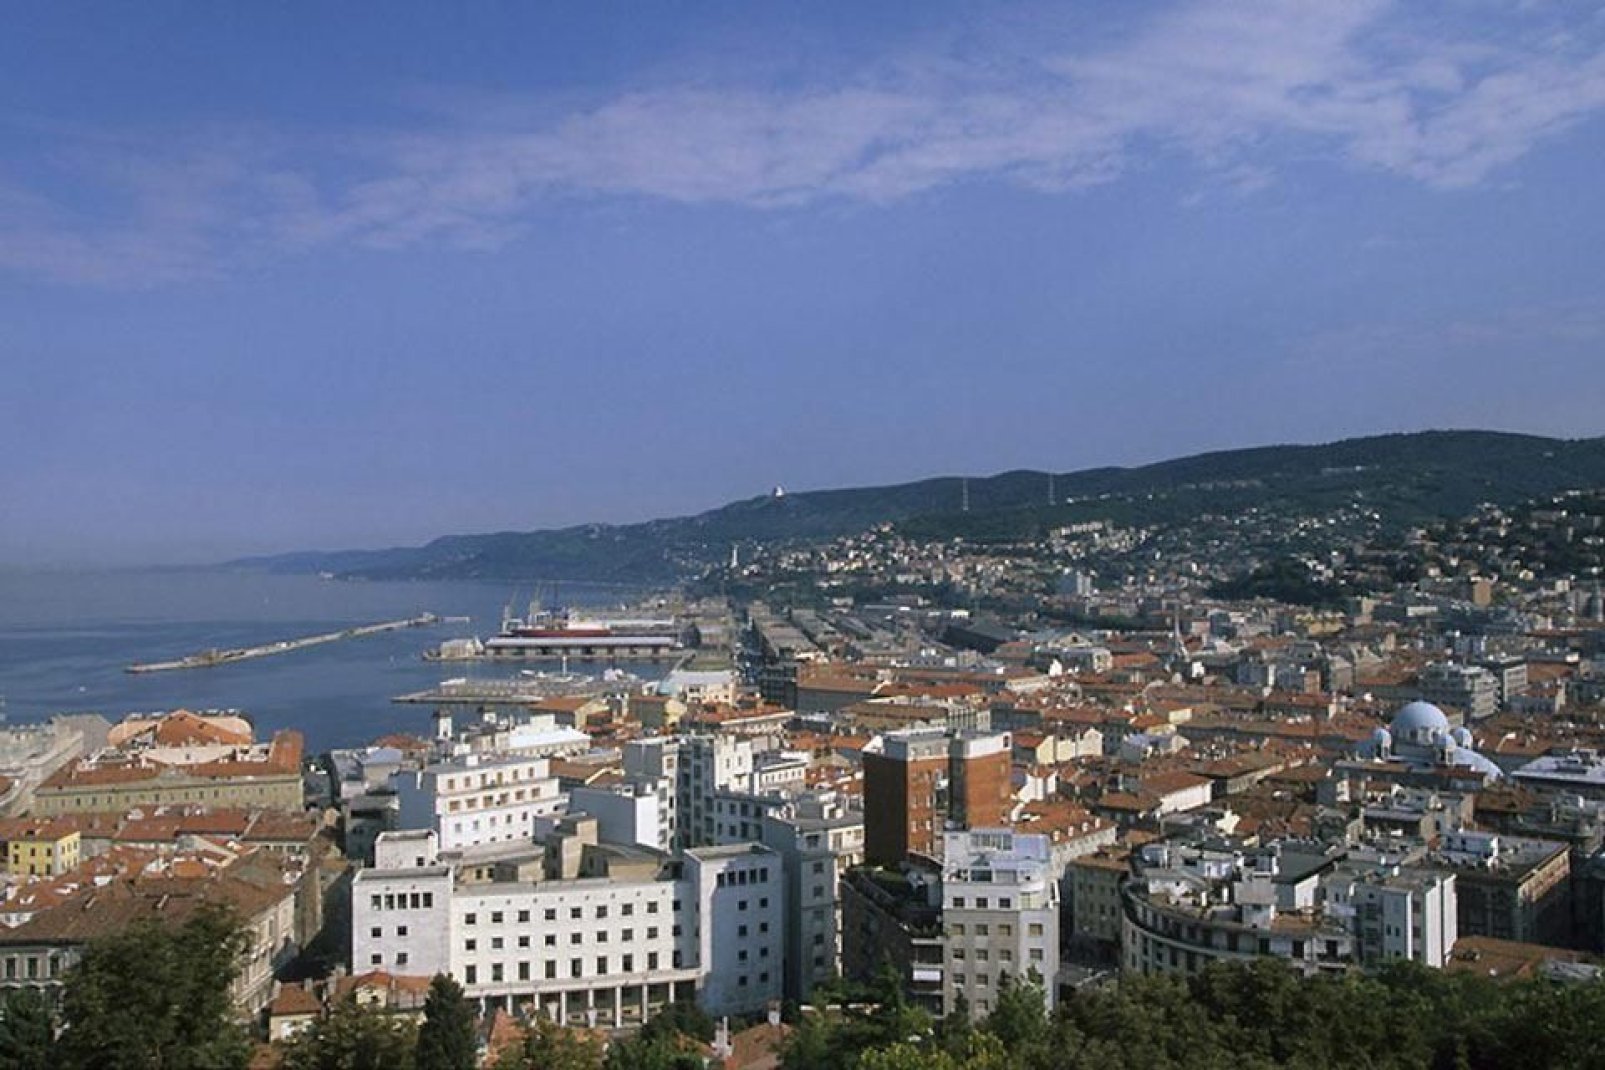 Ville maritime, Trieste a été l'un des ports les plus importants de l'empire des Habsbourg.